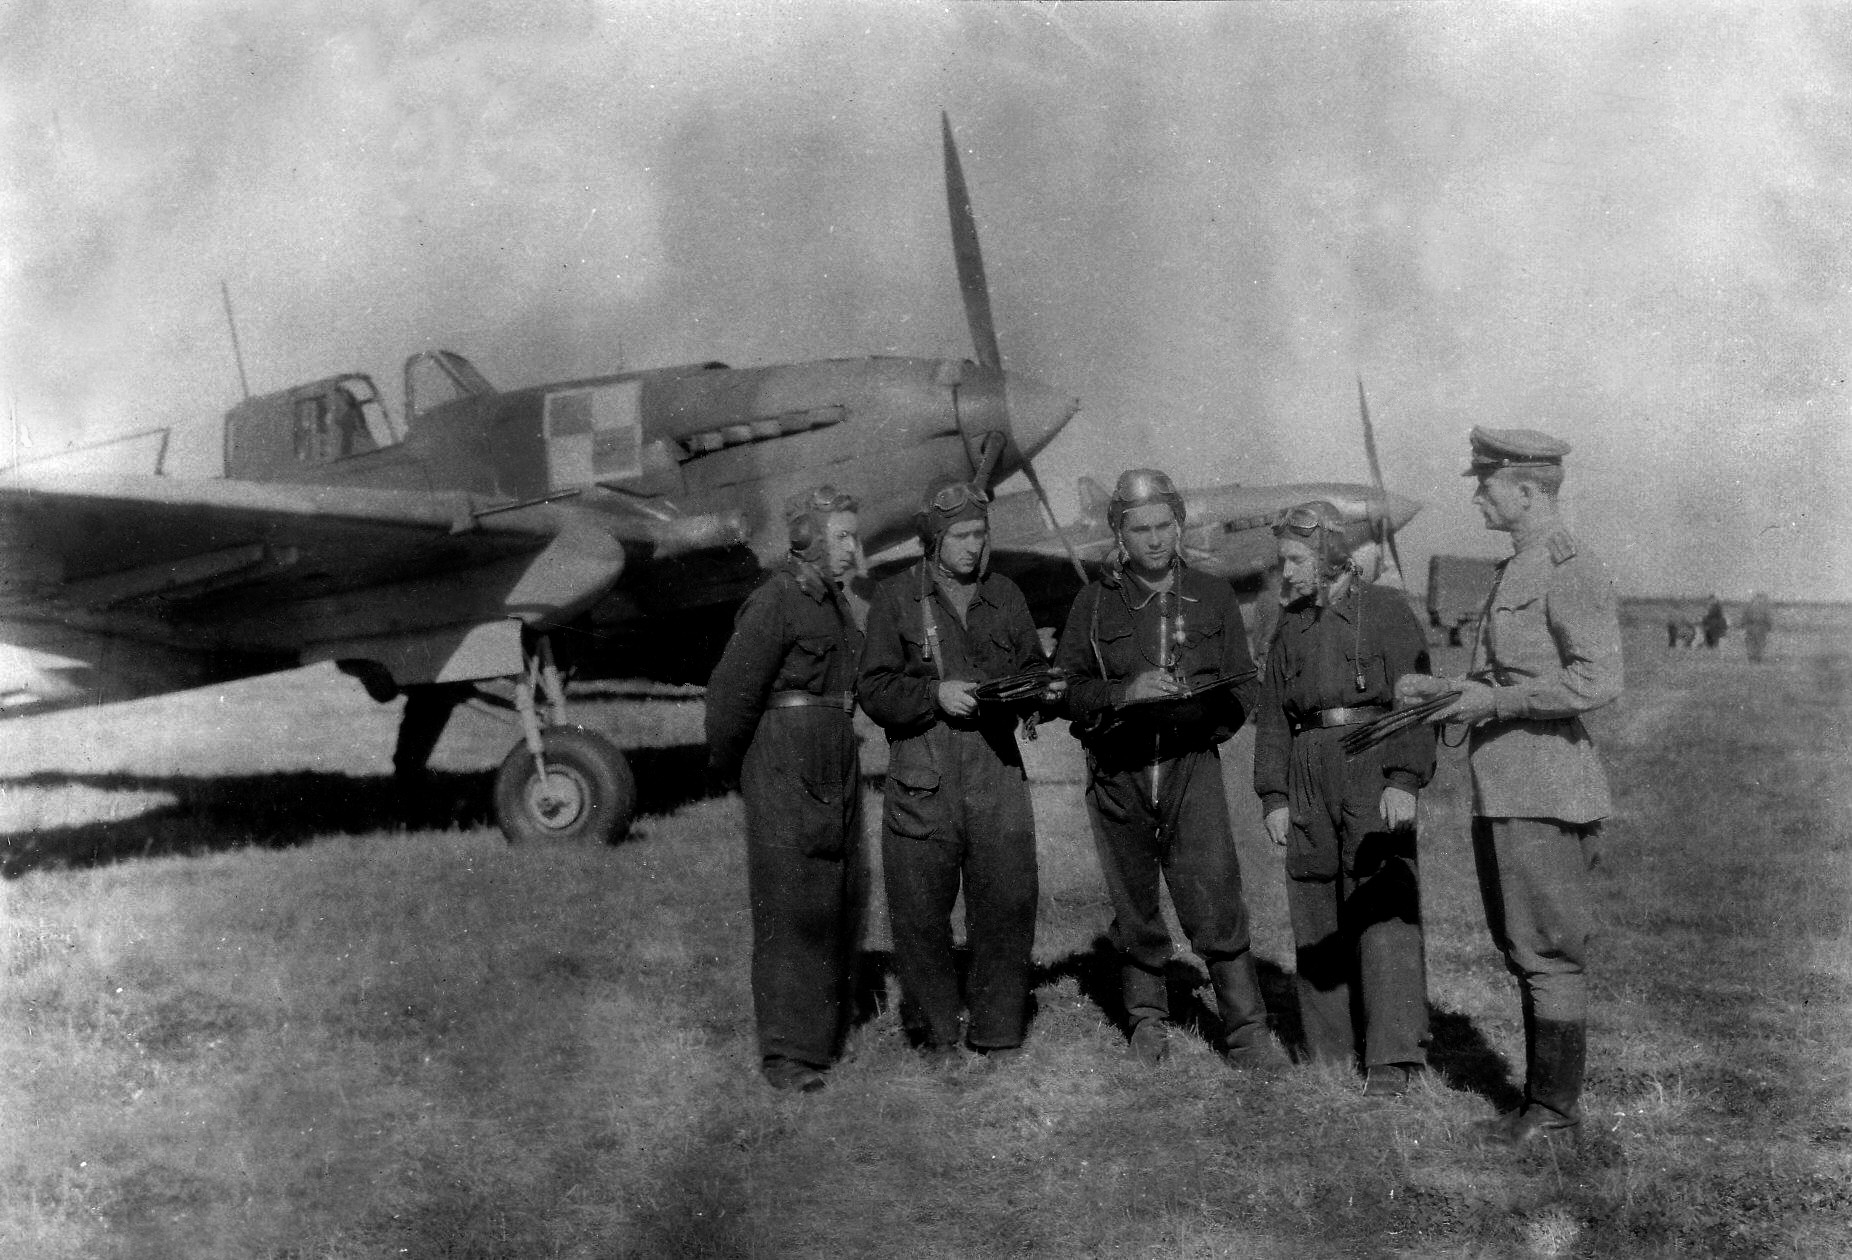 Летчики 8-го польского штурмового авиаполка и советский офицер на фоне Ил-2, 1944 г.